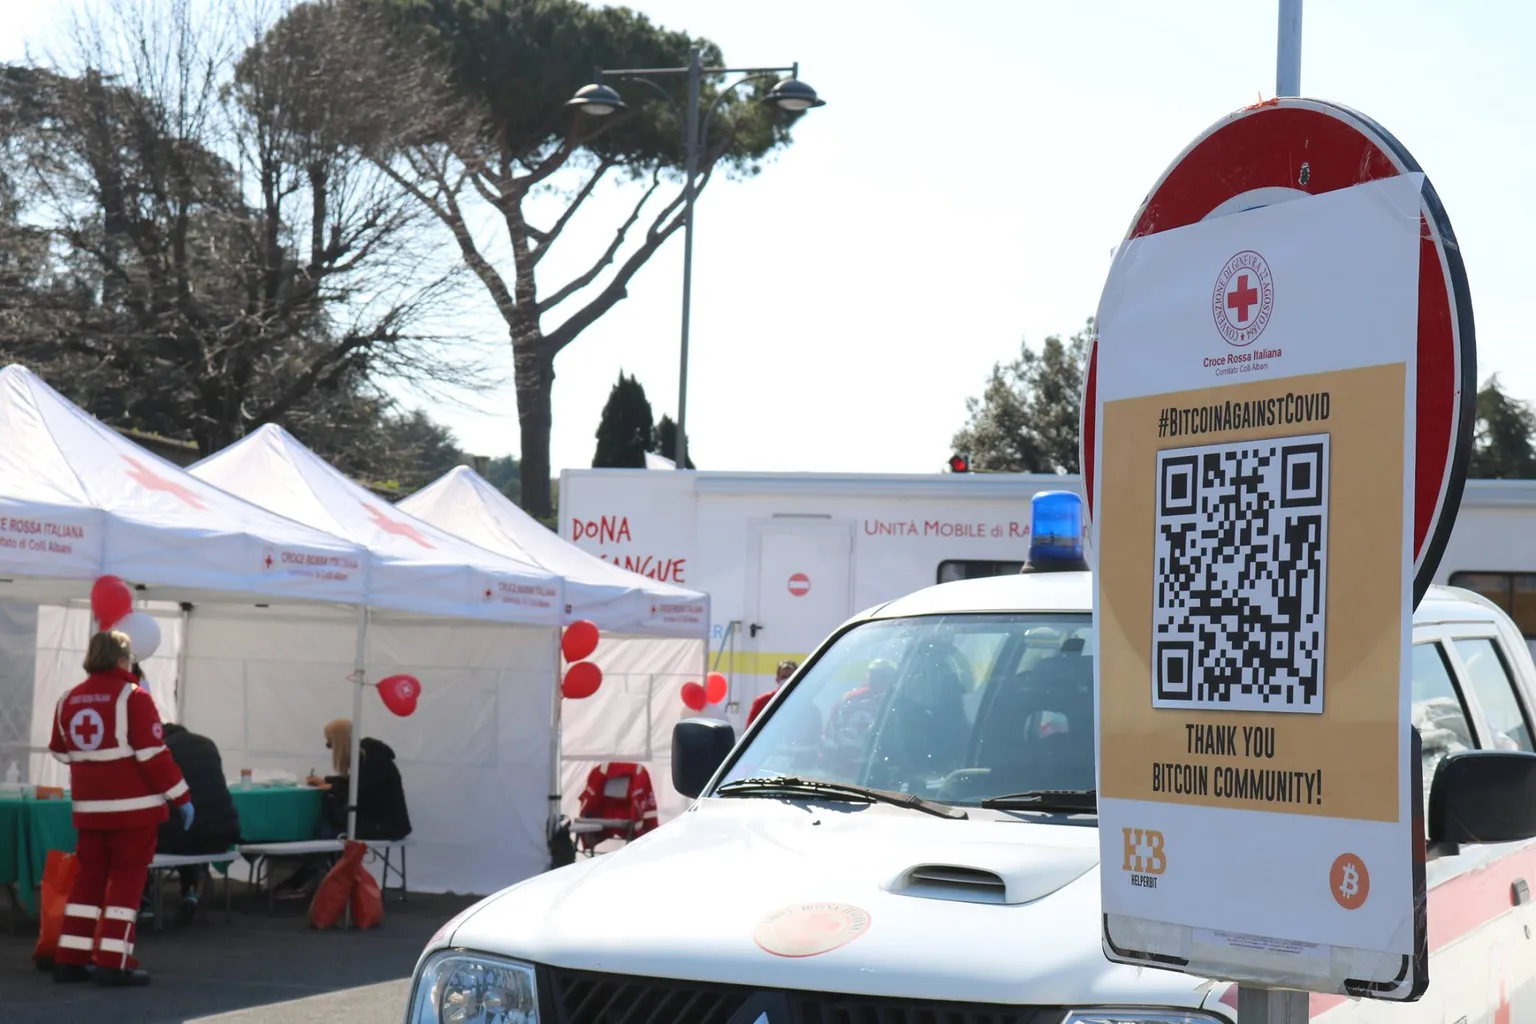 COVID-19: Las donaciones de Bitcoin financian el puesto médico de la Cruz Roja